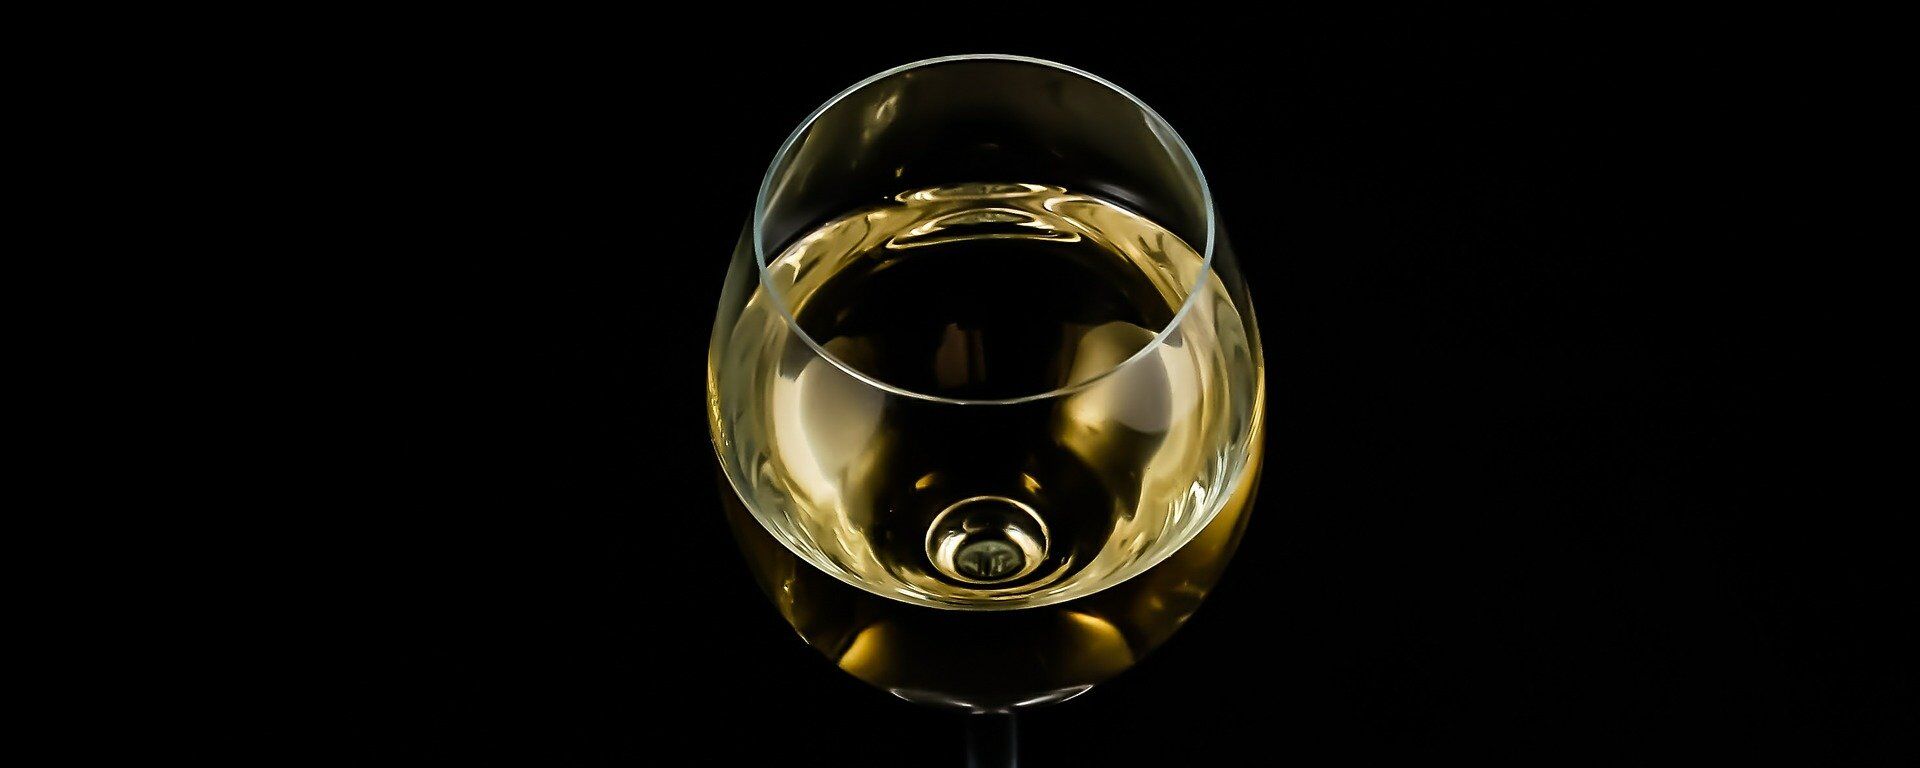 Una copa de vino blanco (imagen referencial) - Sputnik Mundo, 1920, 19.05.2021